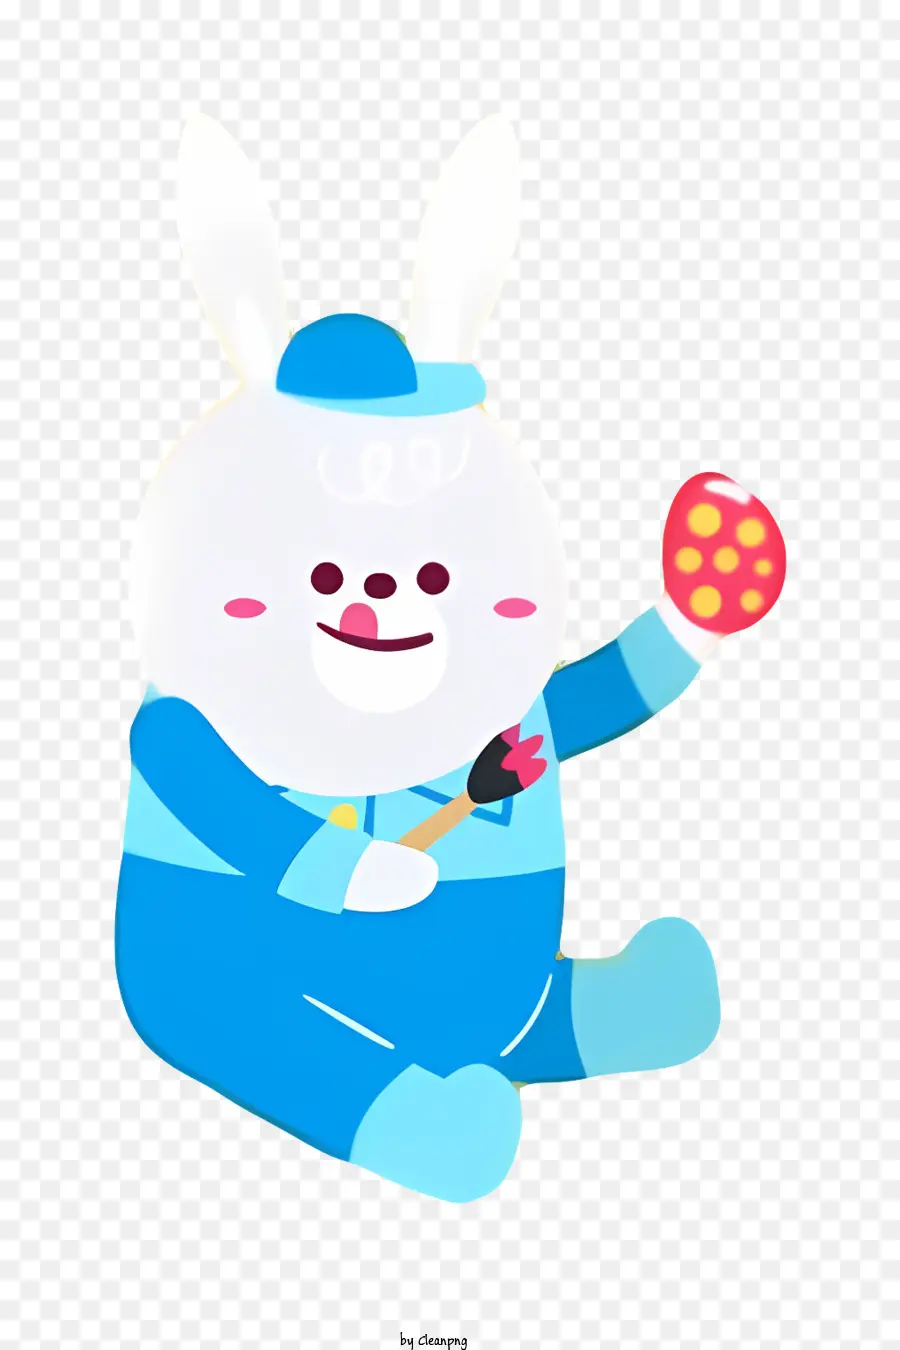 Bunny mặt nhân vật quần áo màu xanh găng tay màu đỏ - Nhân vật hoạt hình trong quần áo màu xanh cầm trứng